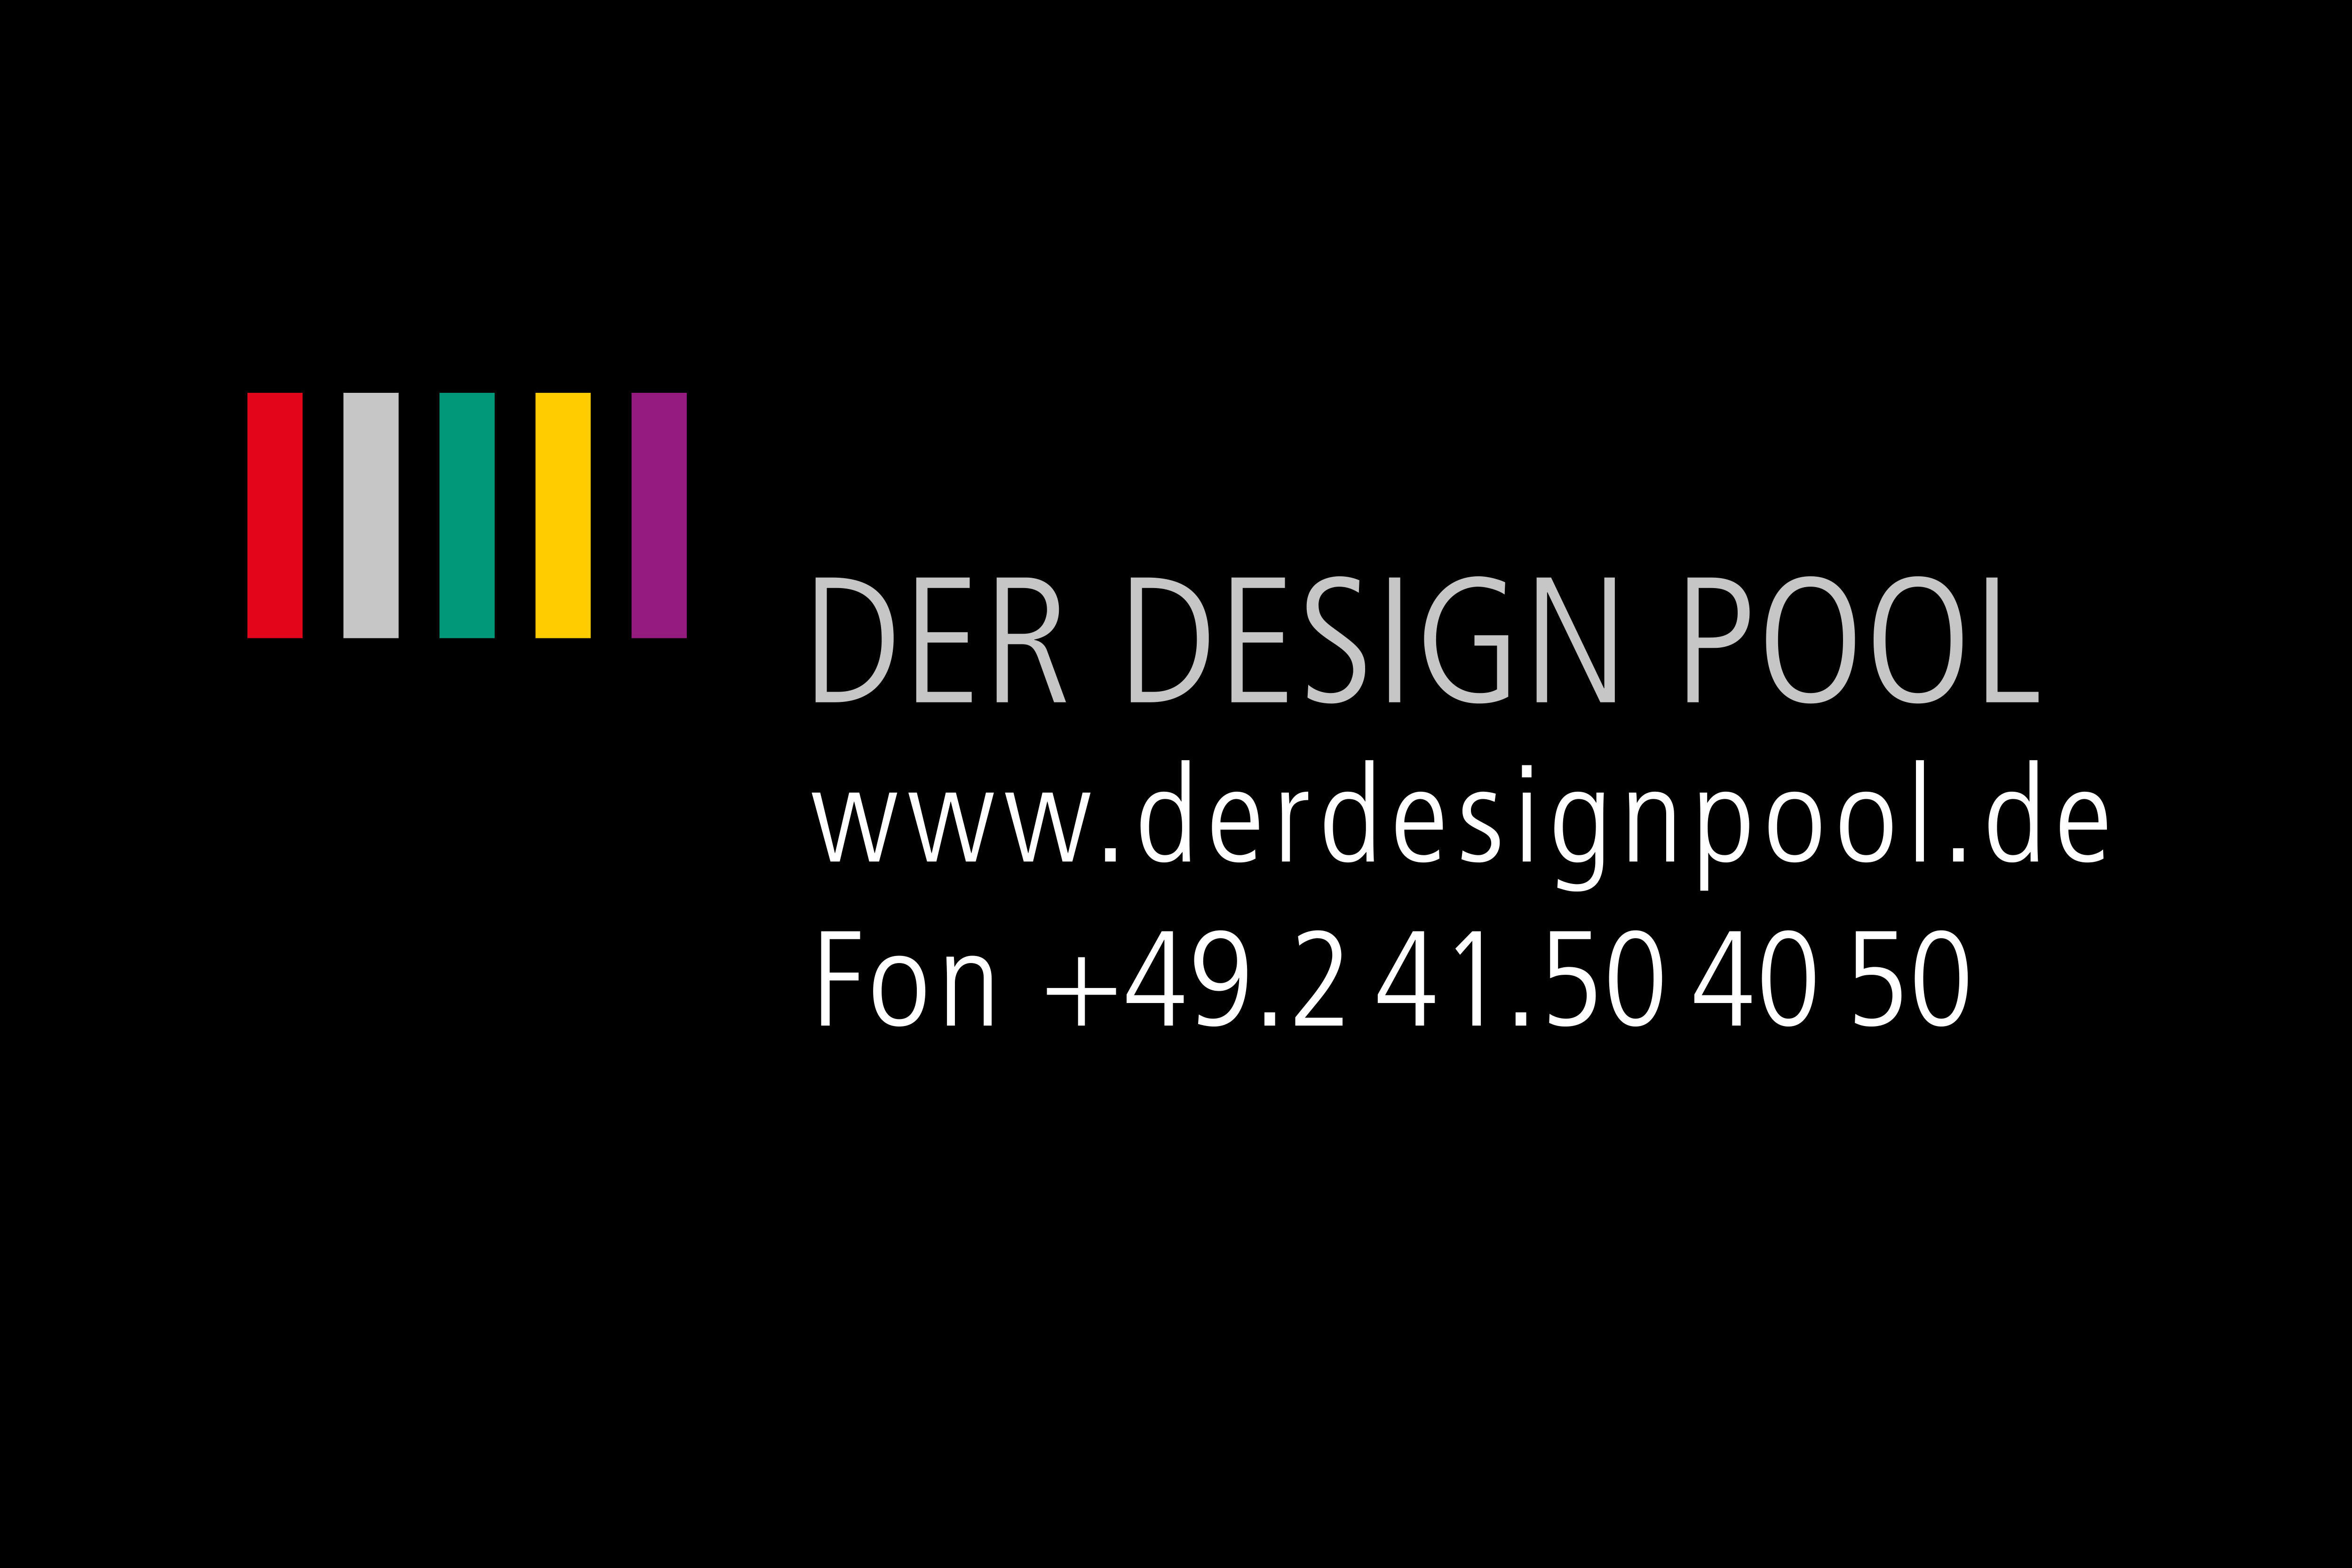 Der Design Pool Web- & Werbeagentur